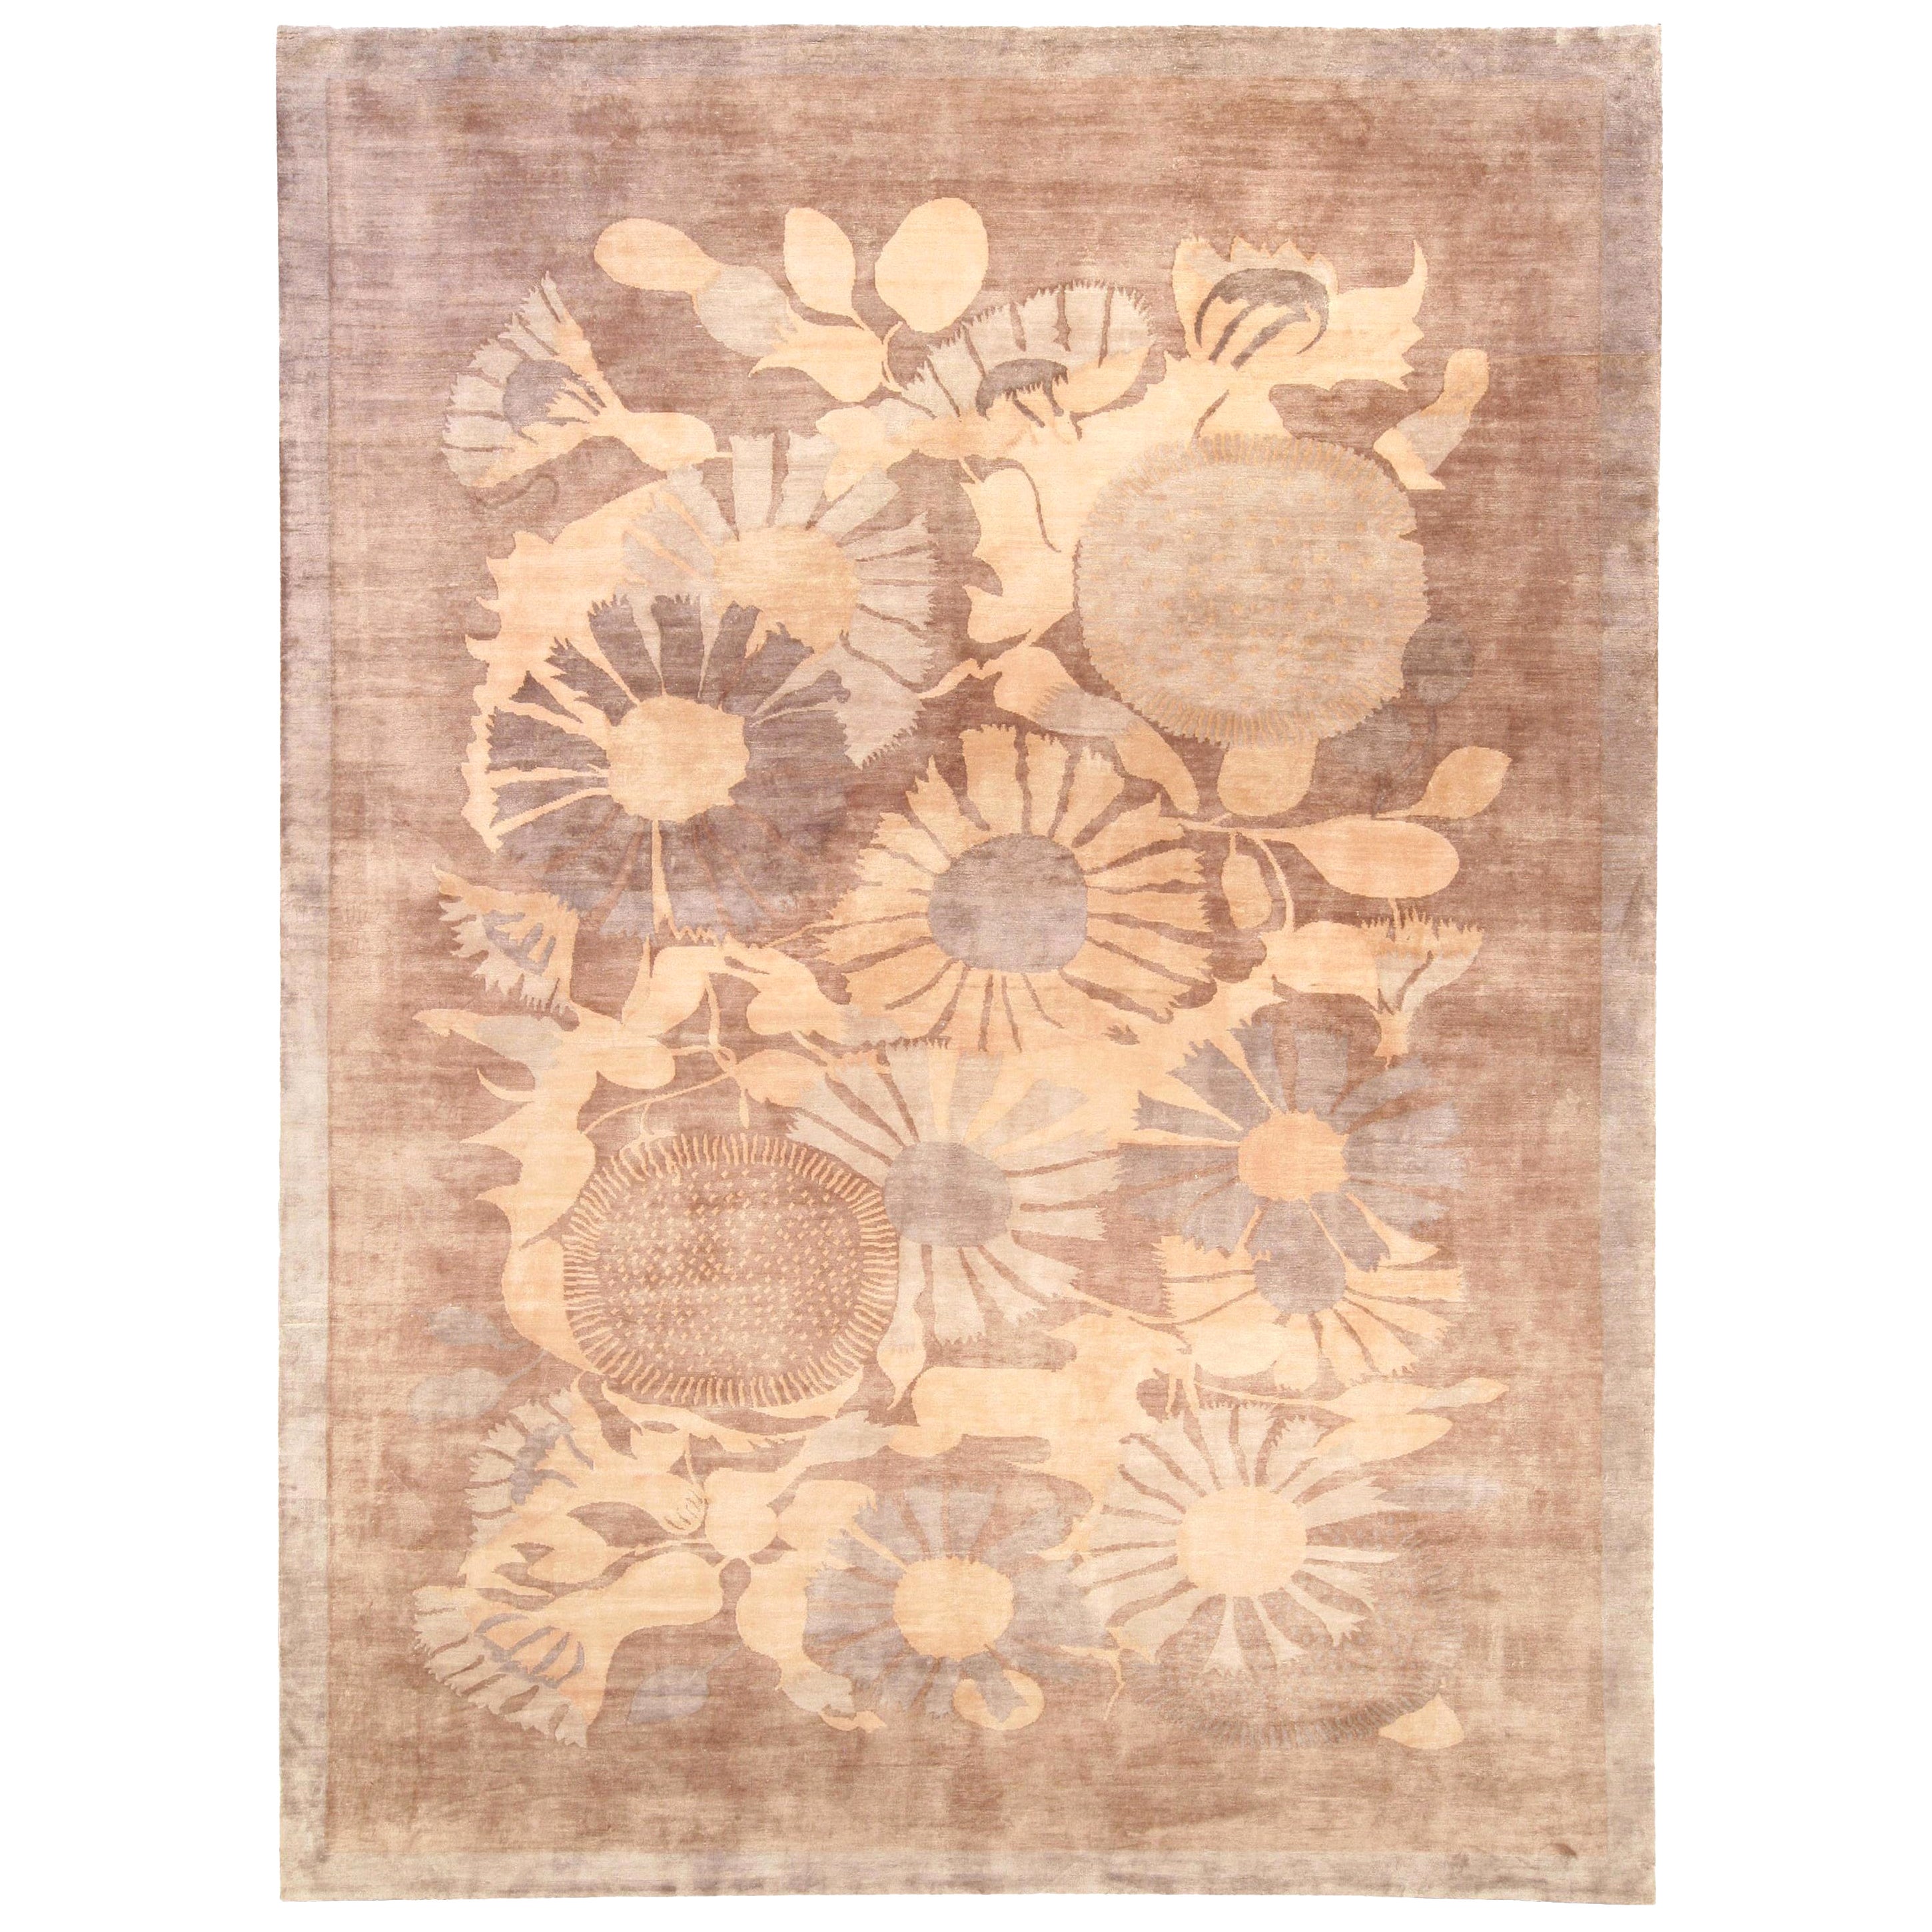 Tapis contemporain en soie nouée à la main à motifs floraux Lilly de Doris Leslie Blau